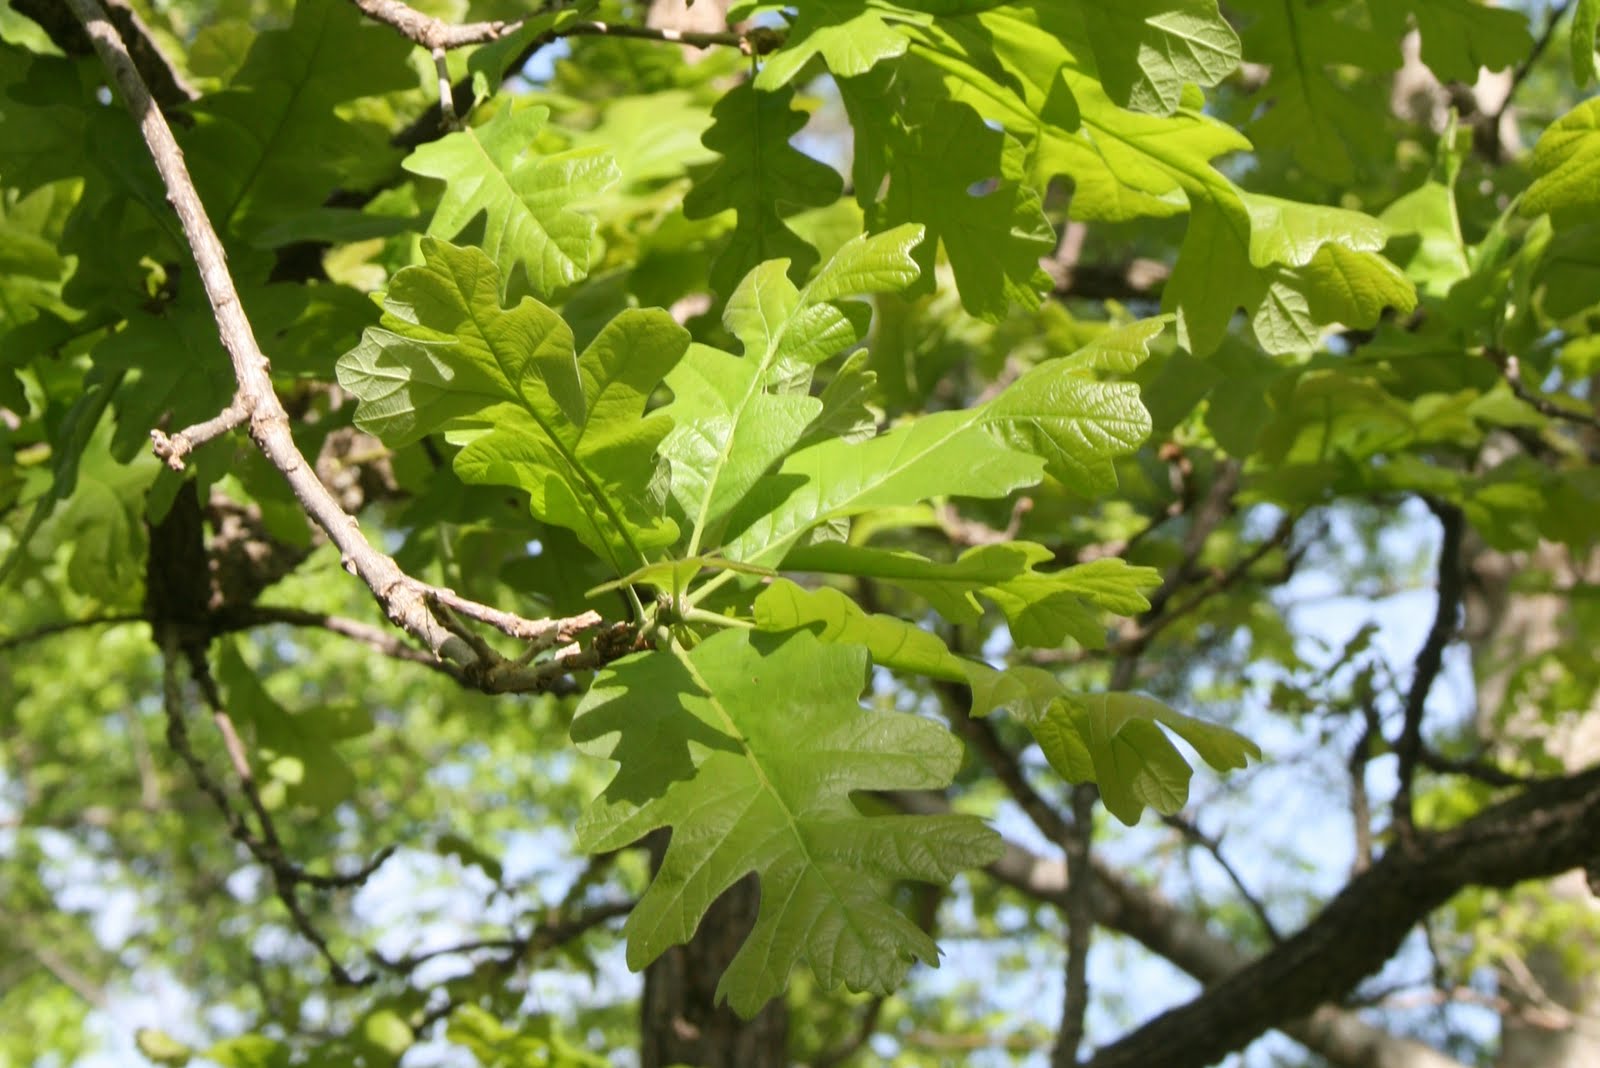 Centenary College Arboretum: Quercus macrocarpa